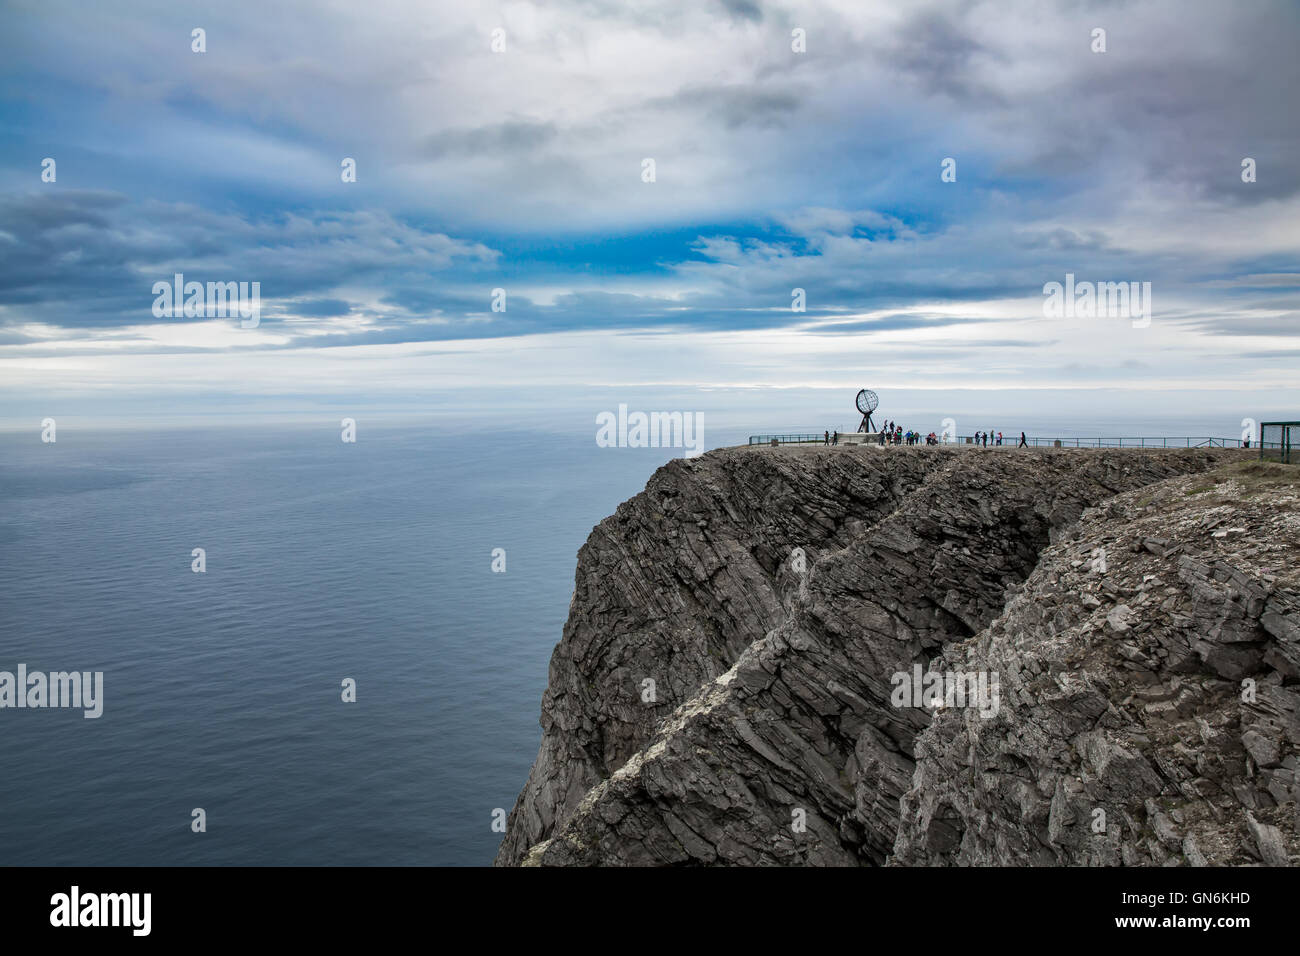 La côte de la mer de Barents le Cap nord (Nordkapp) dans le nord de la Norvège. Banque D'Images